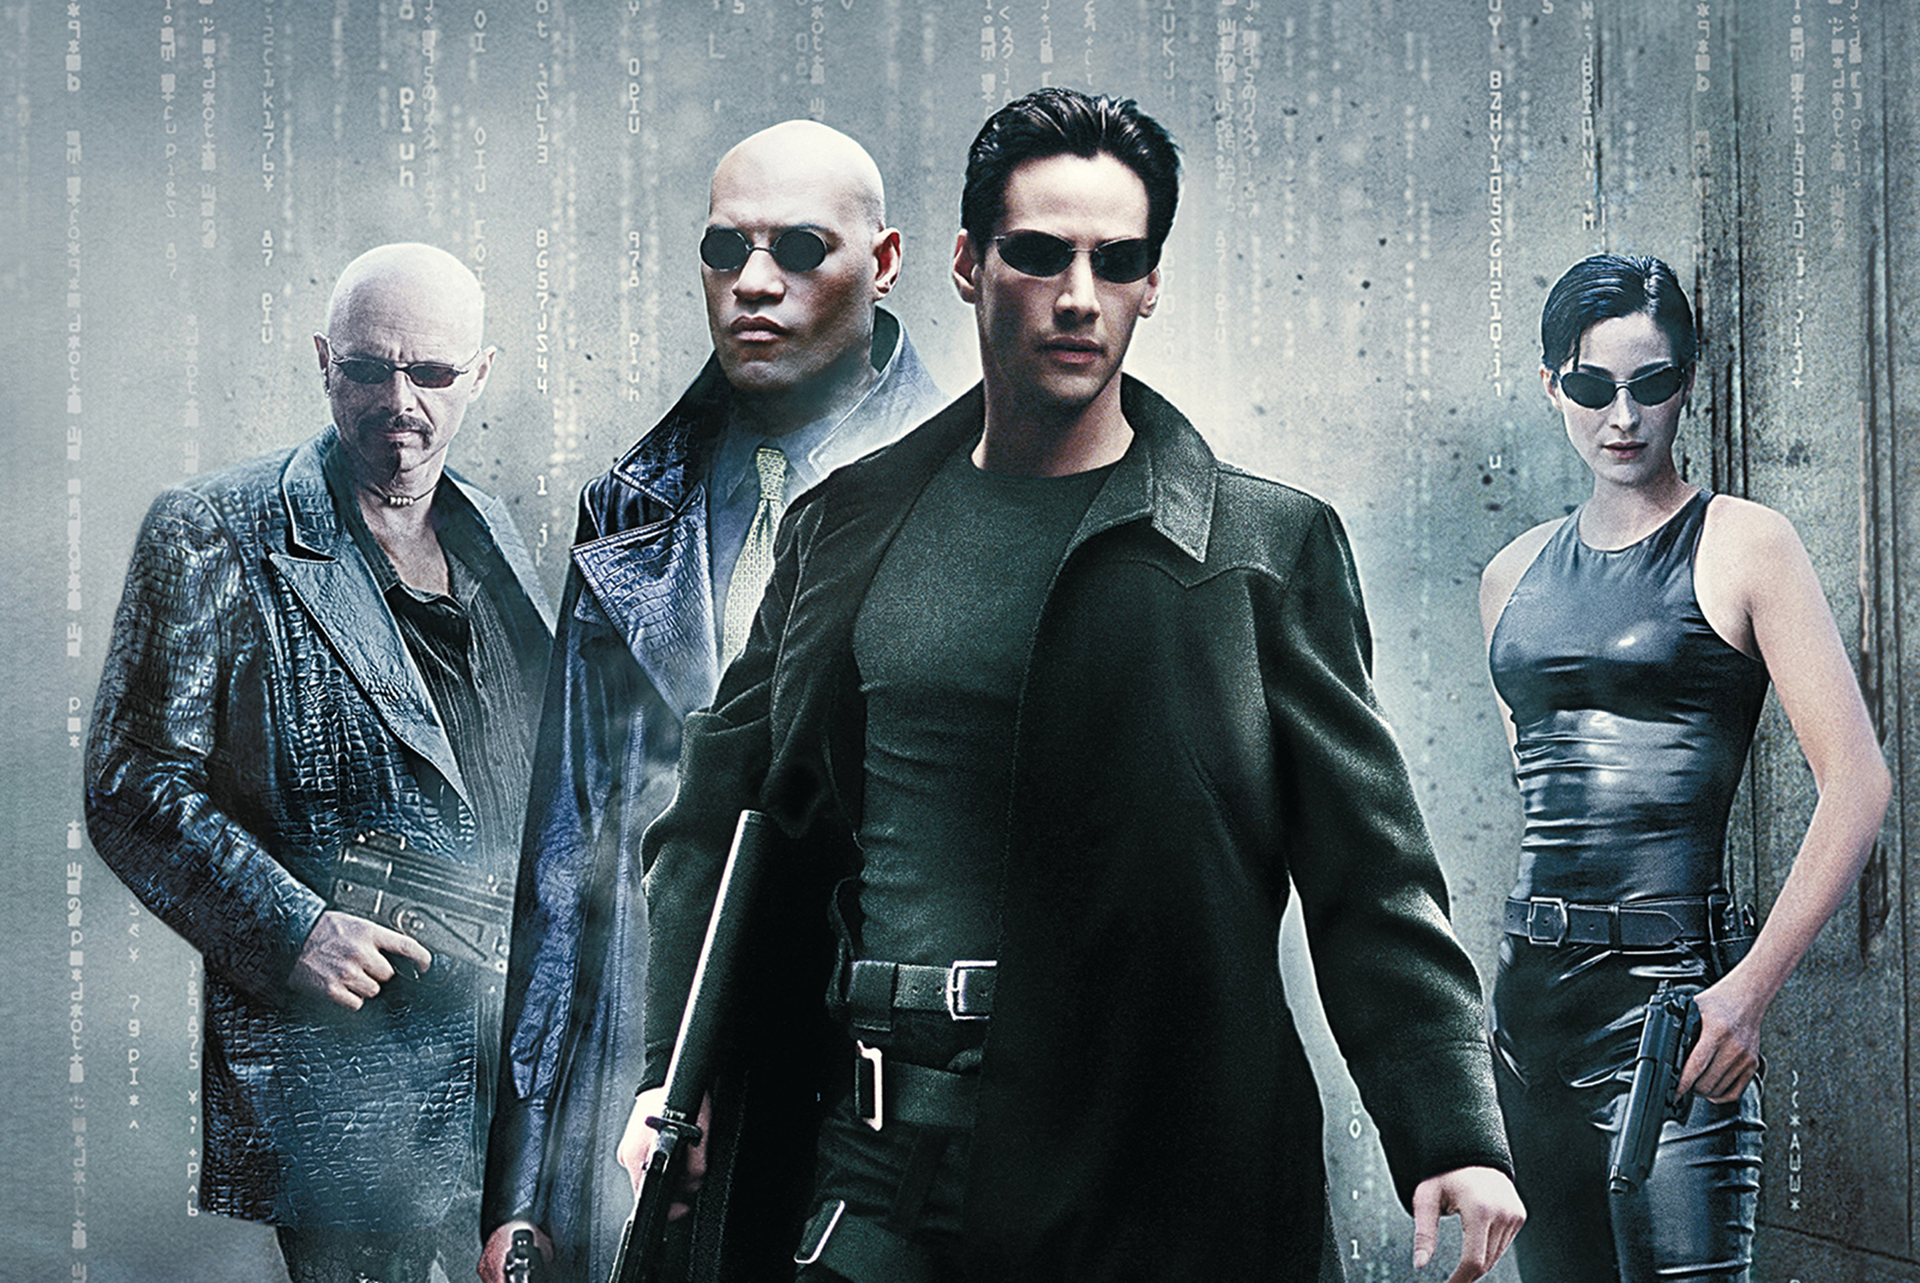 La primera película de la saga Matrix, protagonizada por Keanu Reeves y dirigida por las hermanas Wachowski, se estrenó en año 1991